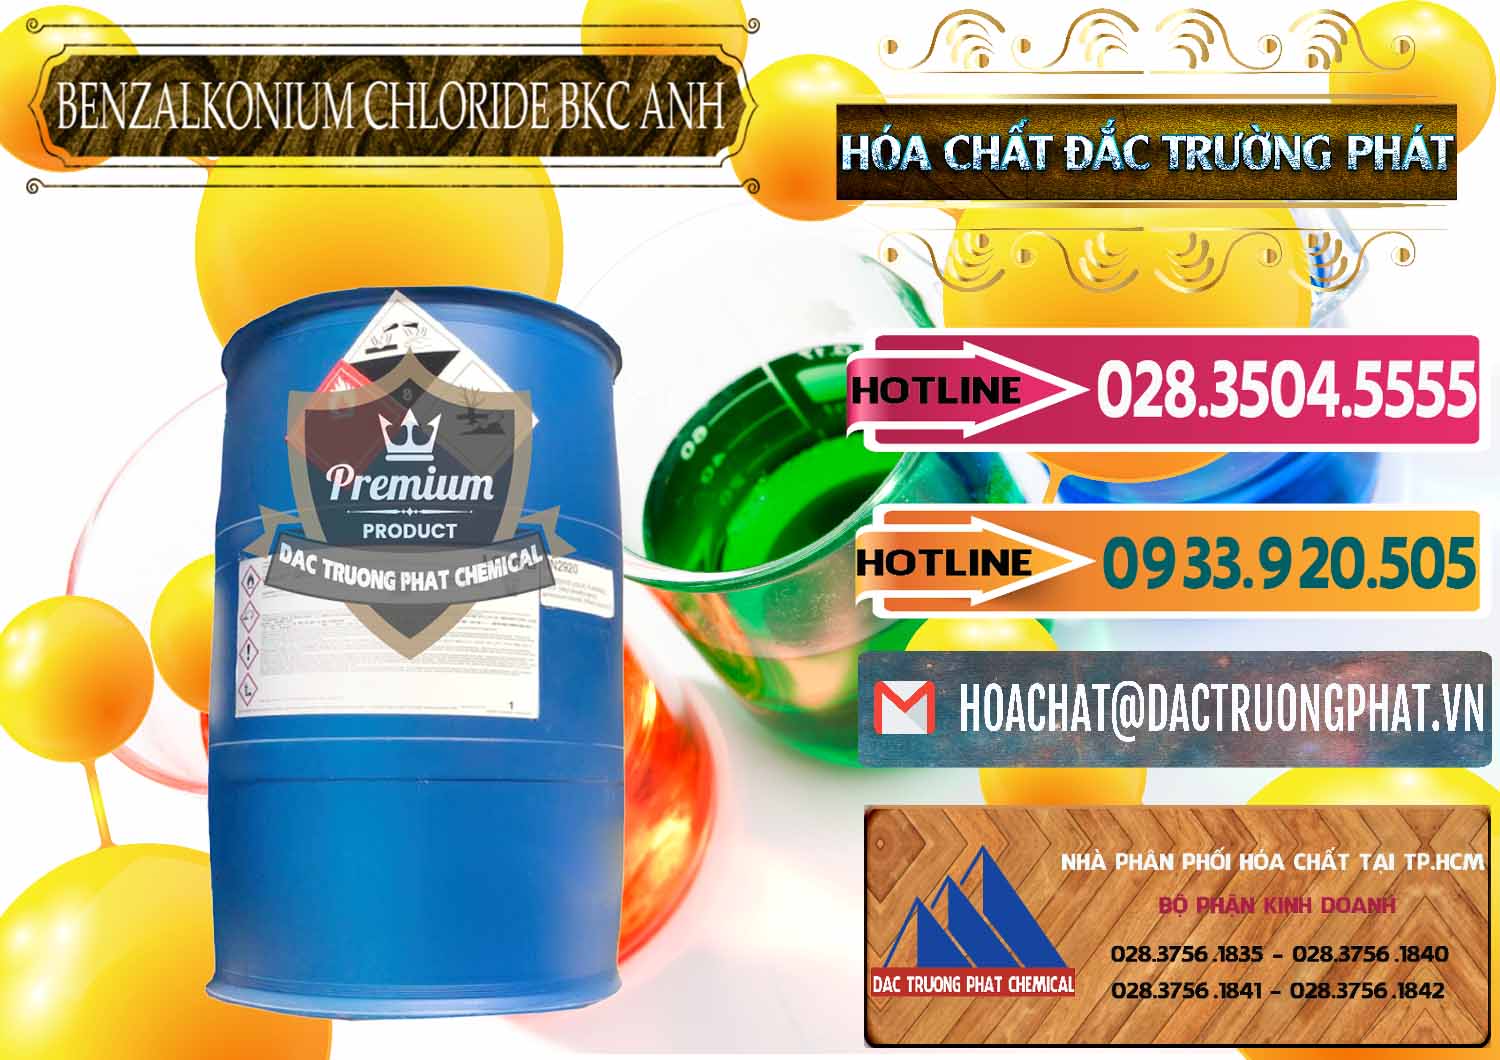 Chuyên cung cấp và bán BKC - Benzalkonium Chloride 80% Anh Quốc Uk Kingdoms - 0457 - Nhà cung ứng ( phân phối ) hóa chất tại TP.HCM - dactruongphat.vn